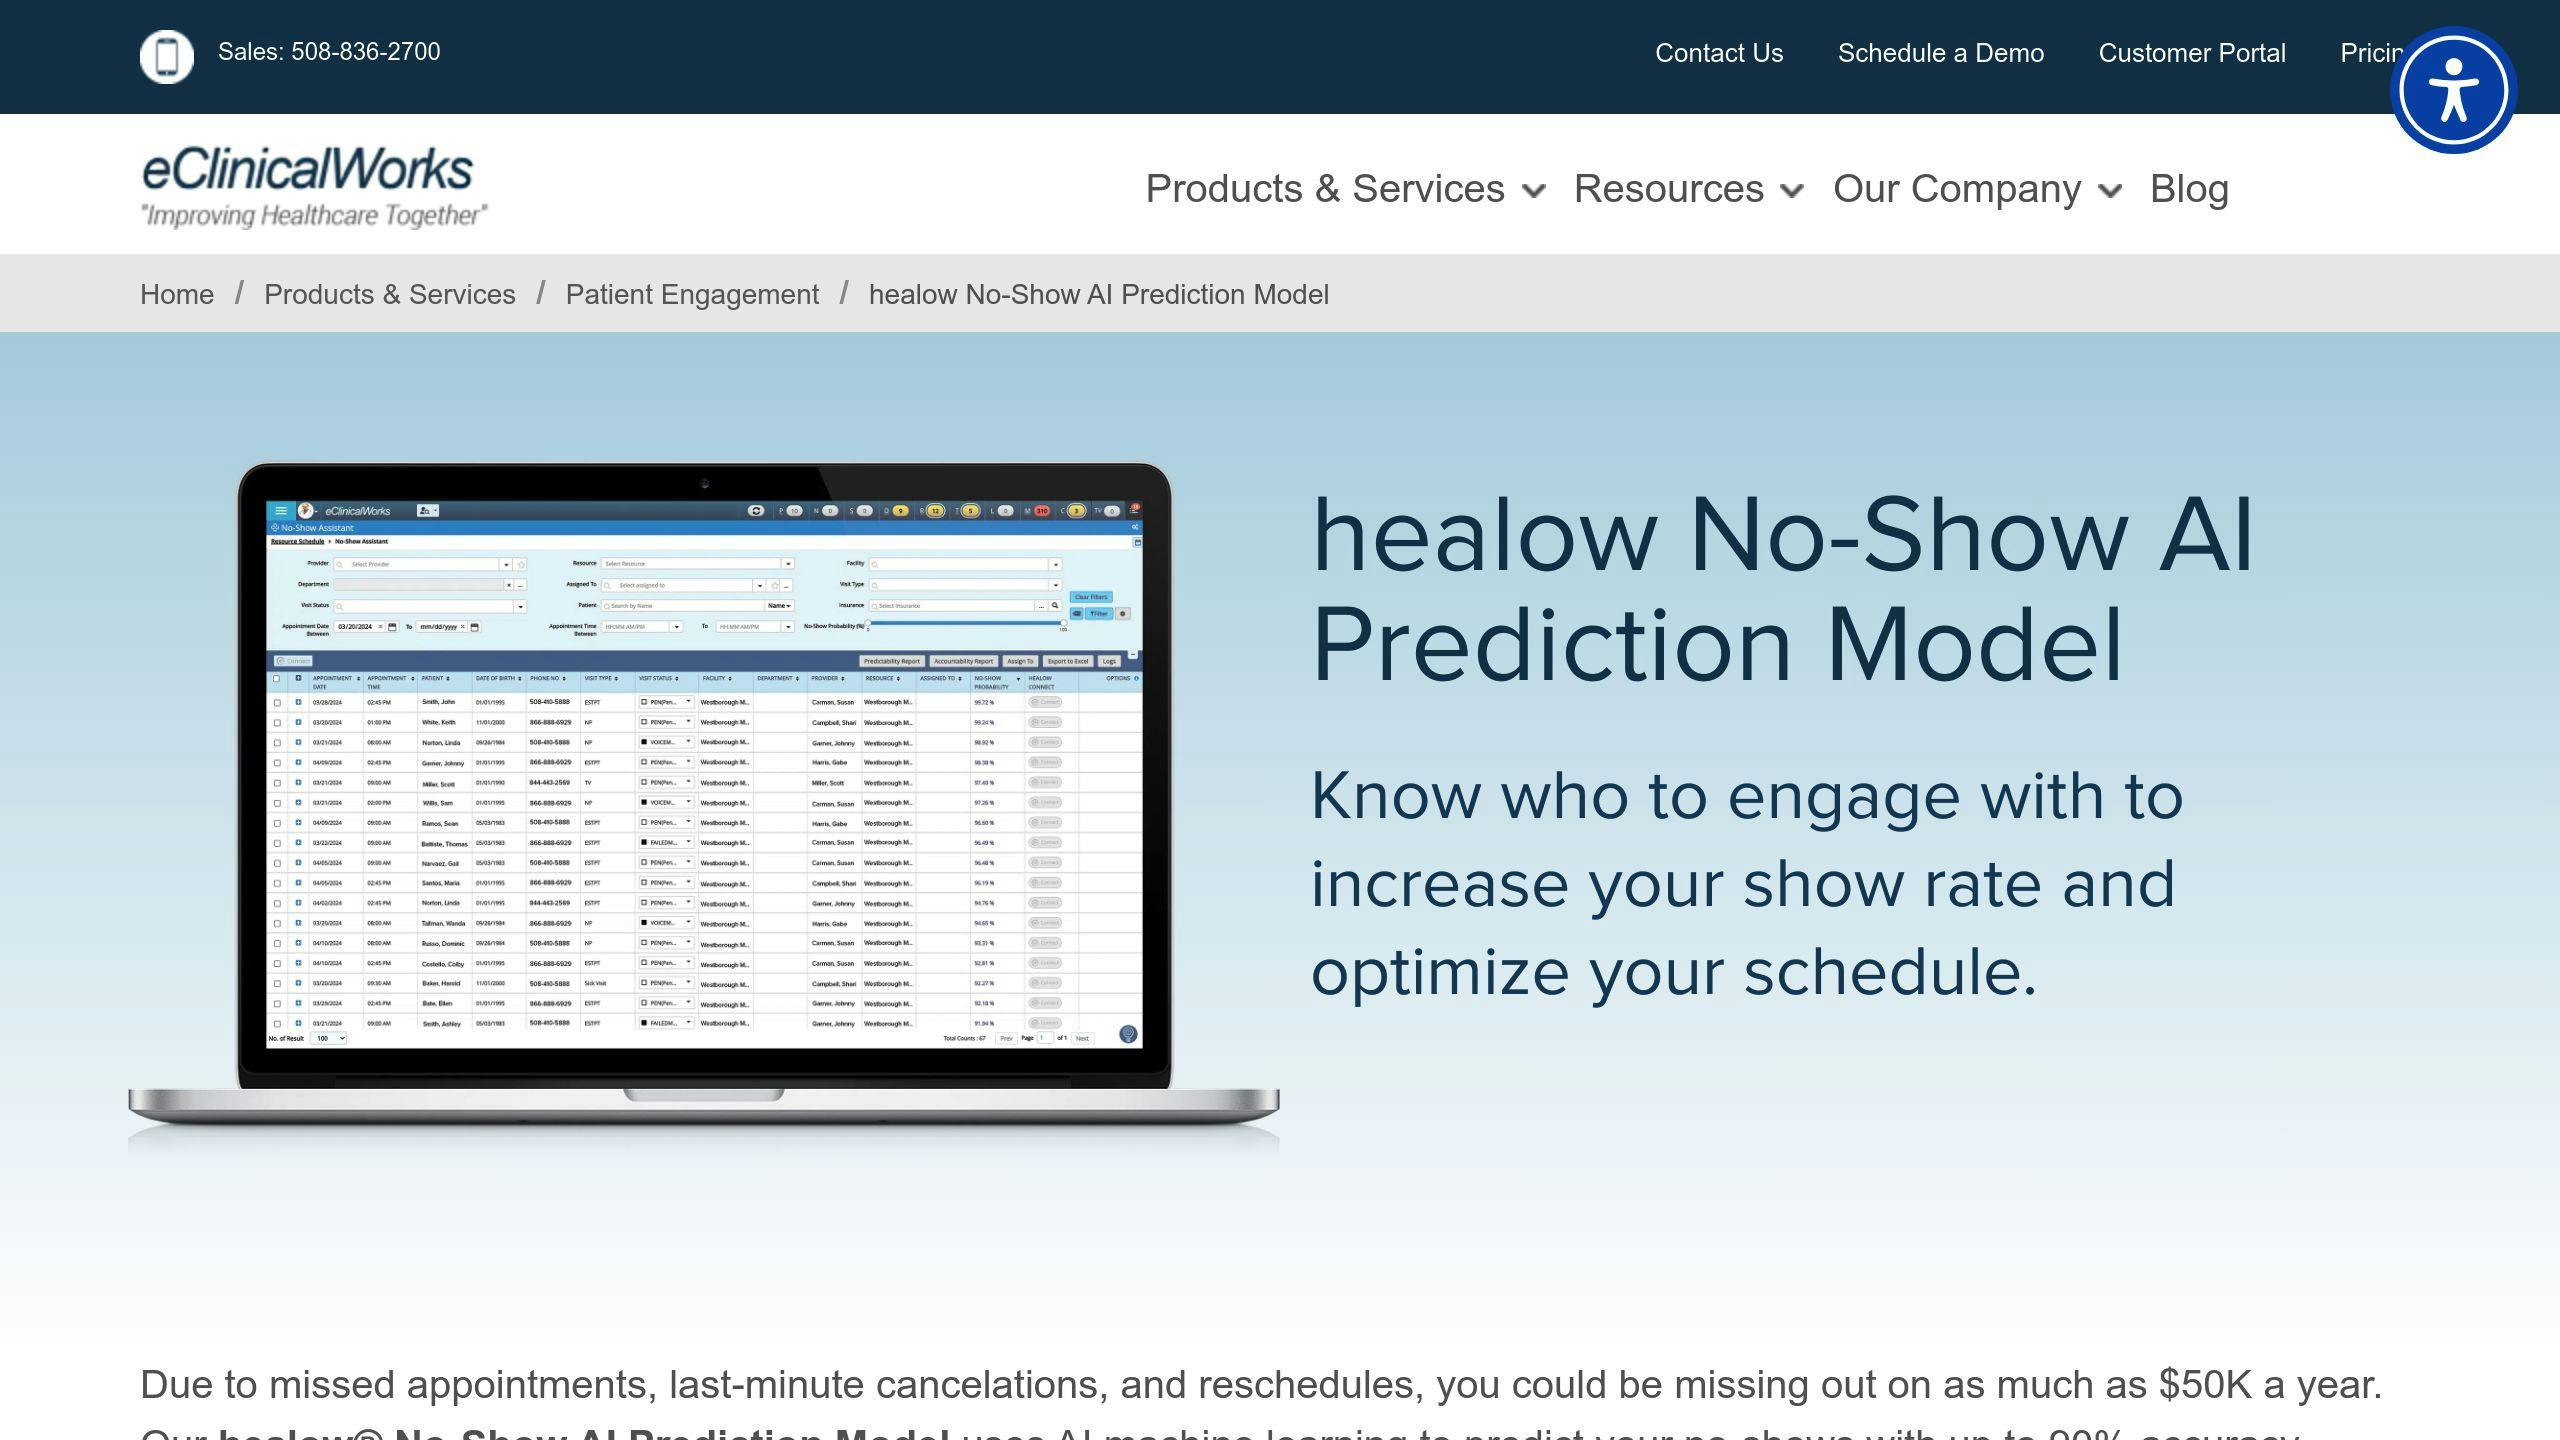 healow No-Show AI Prediction Model